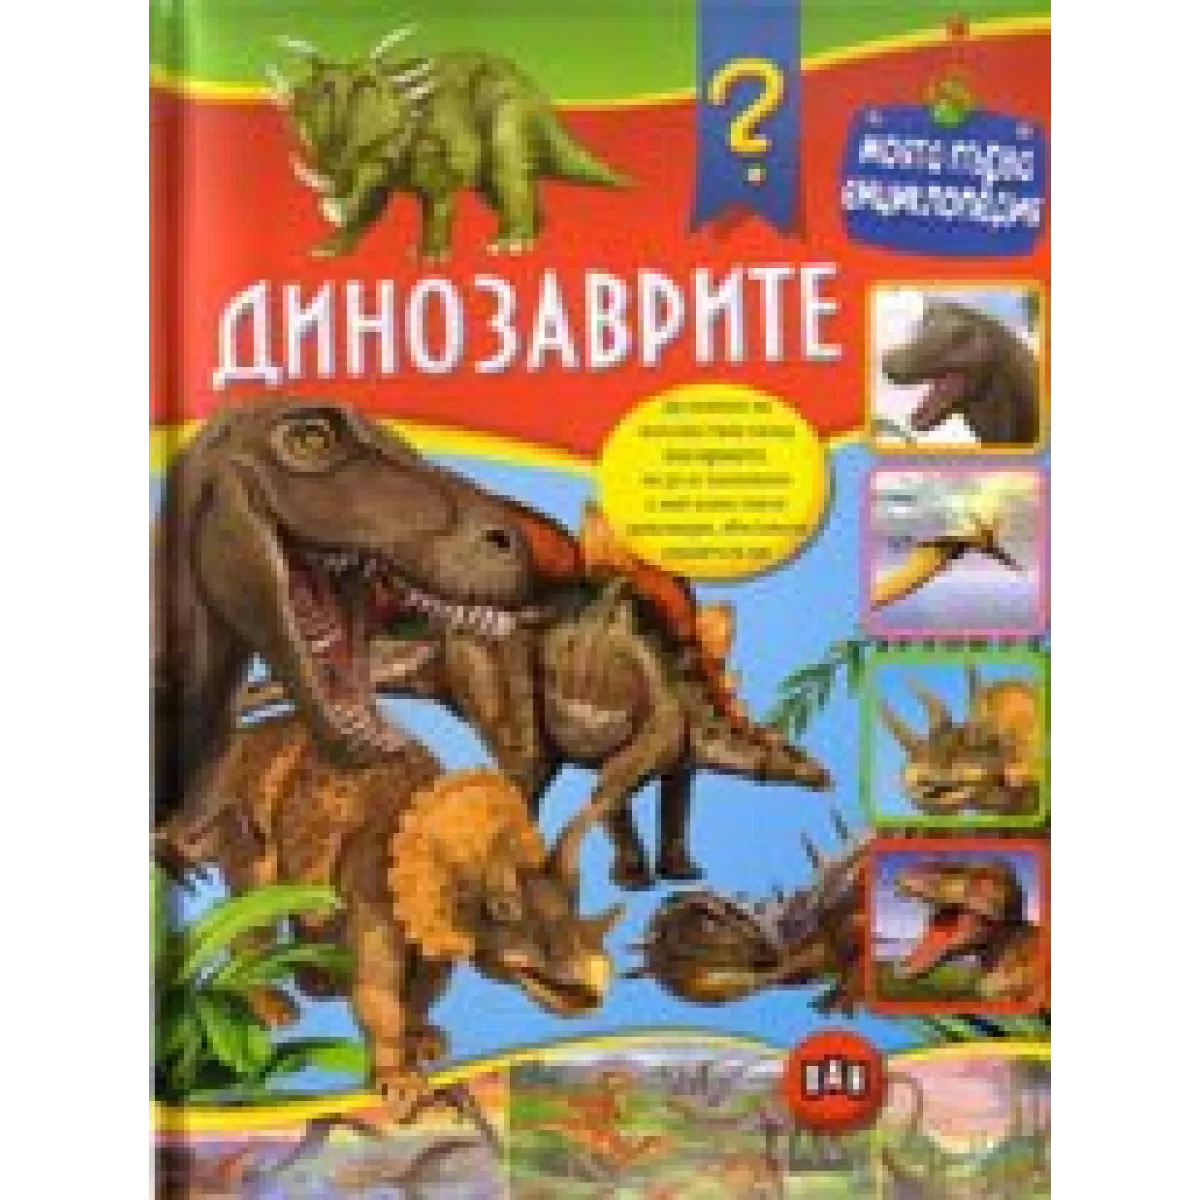 Моята първа енциклопедия. Динозаврите